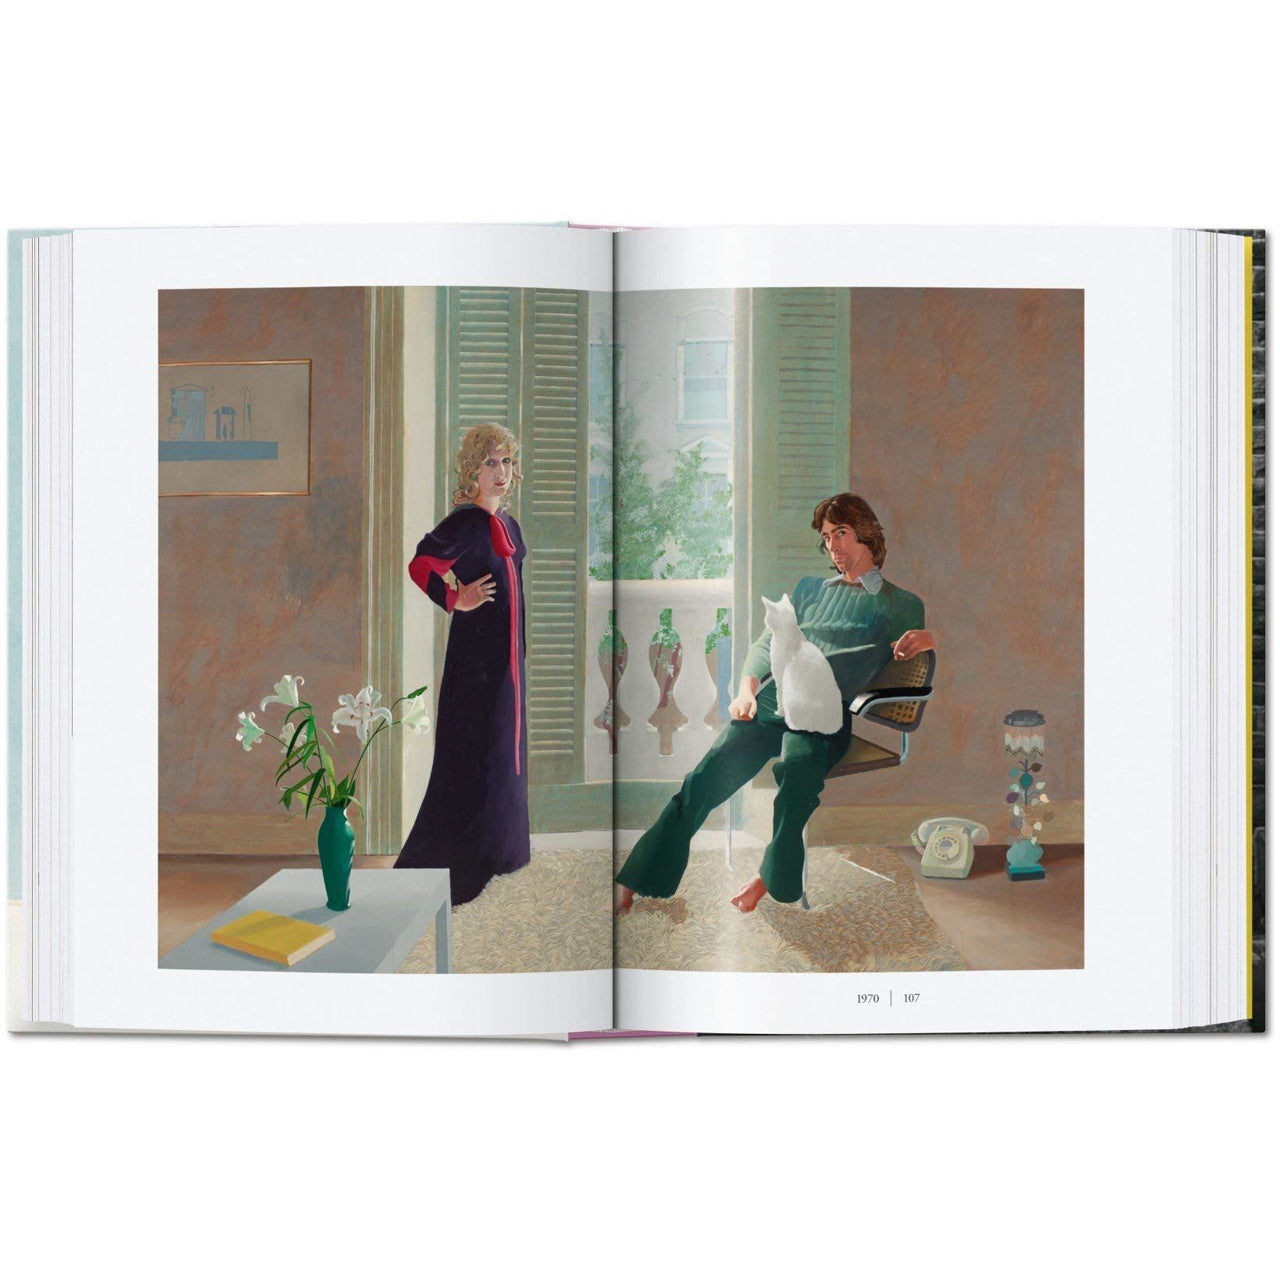 David Hockney. A Chronology by Hans Werner Holzwarth & David Hockney Glyndebourne Shop